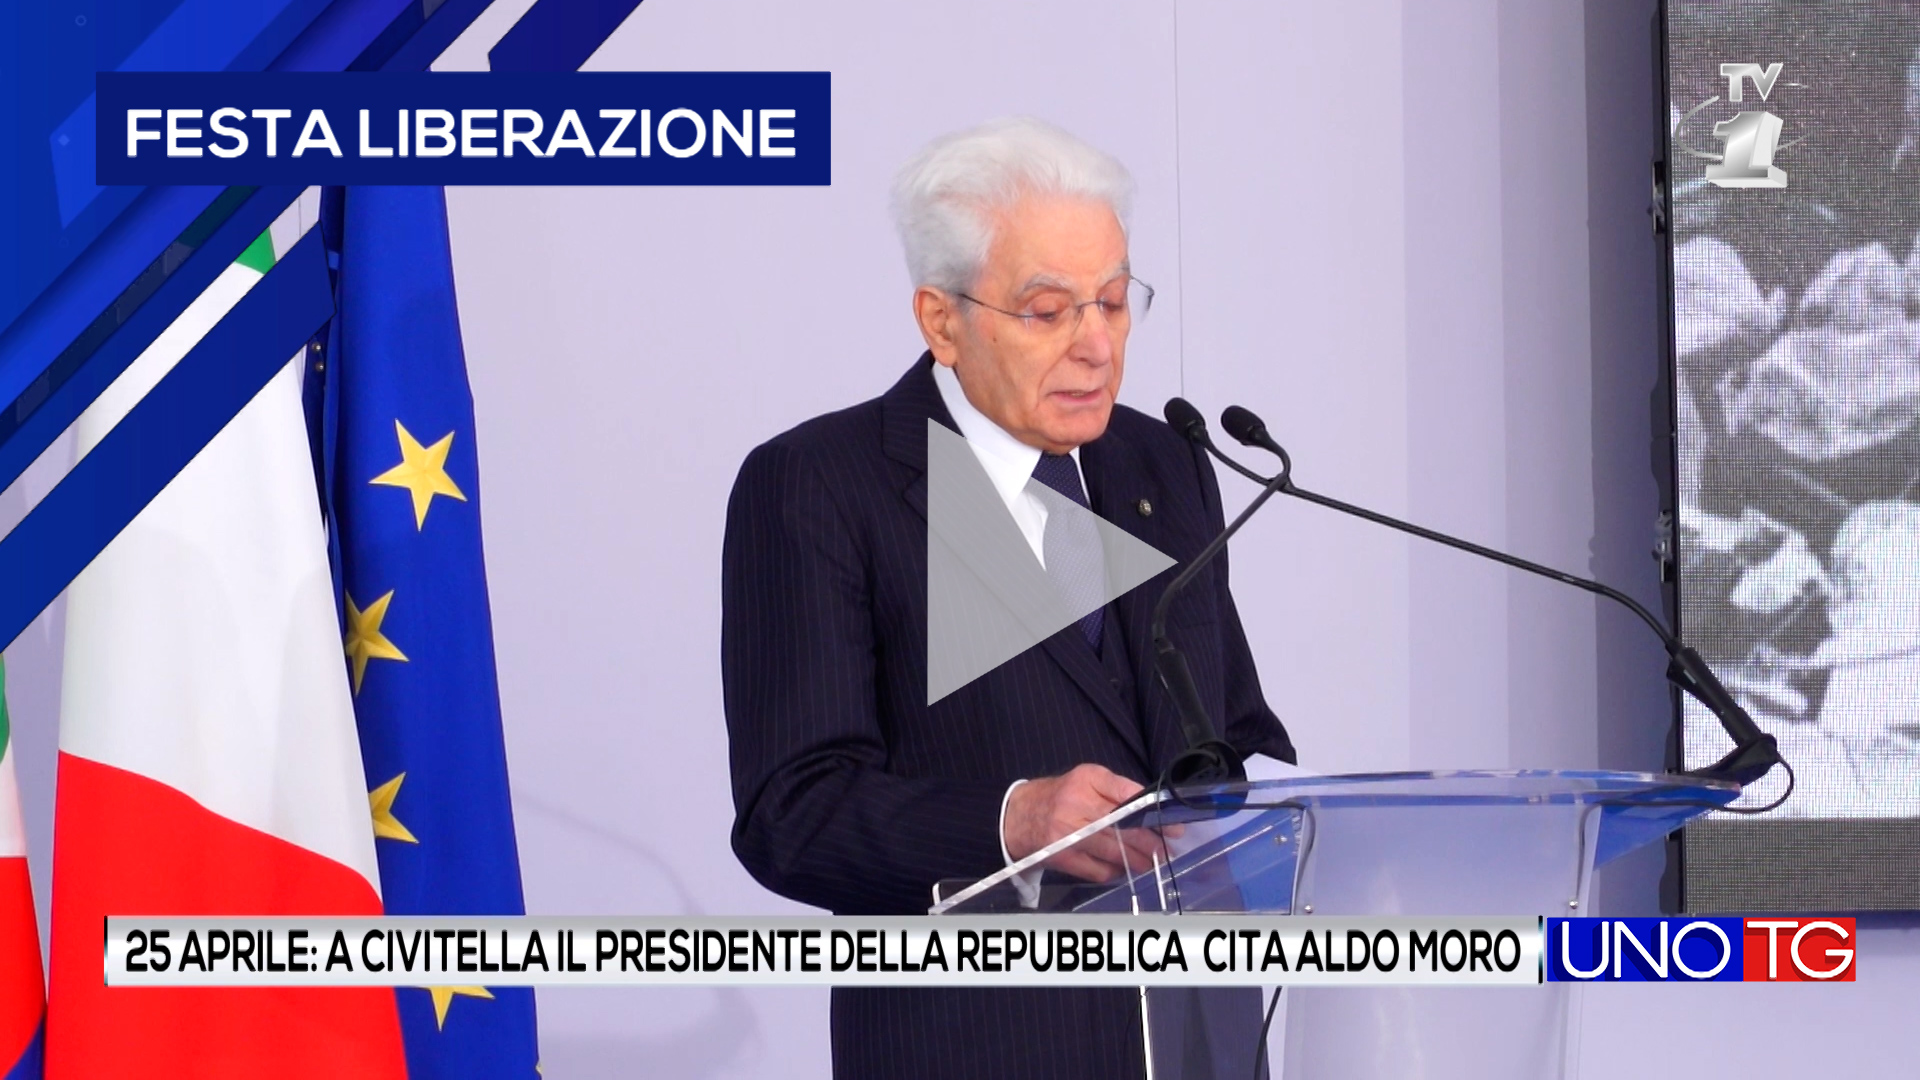 25 aprile: il Presidente Mattarella cita Aldo Moro